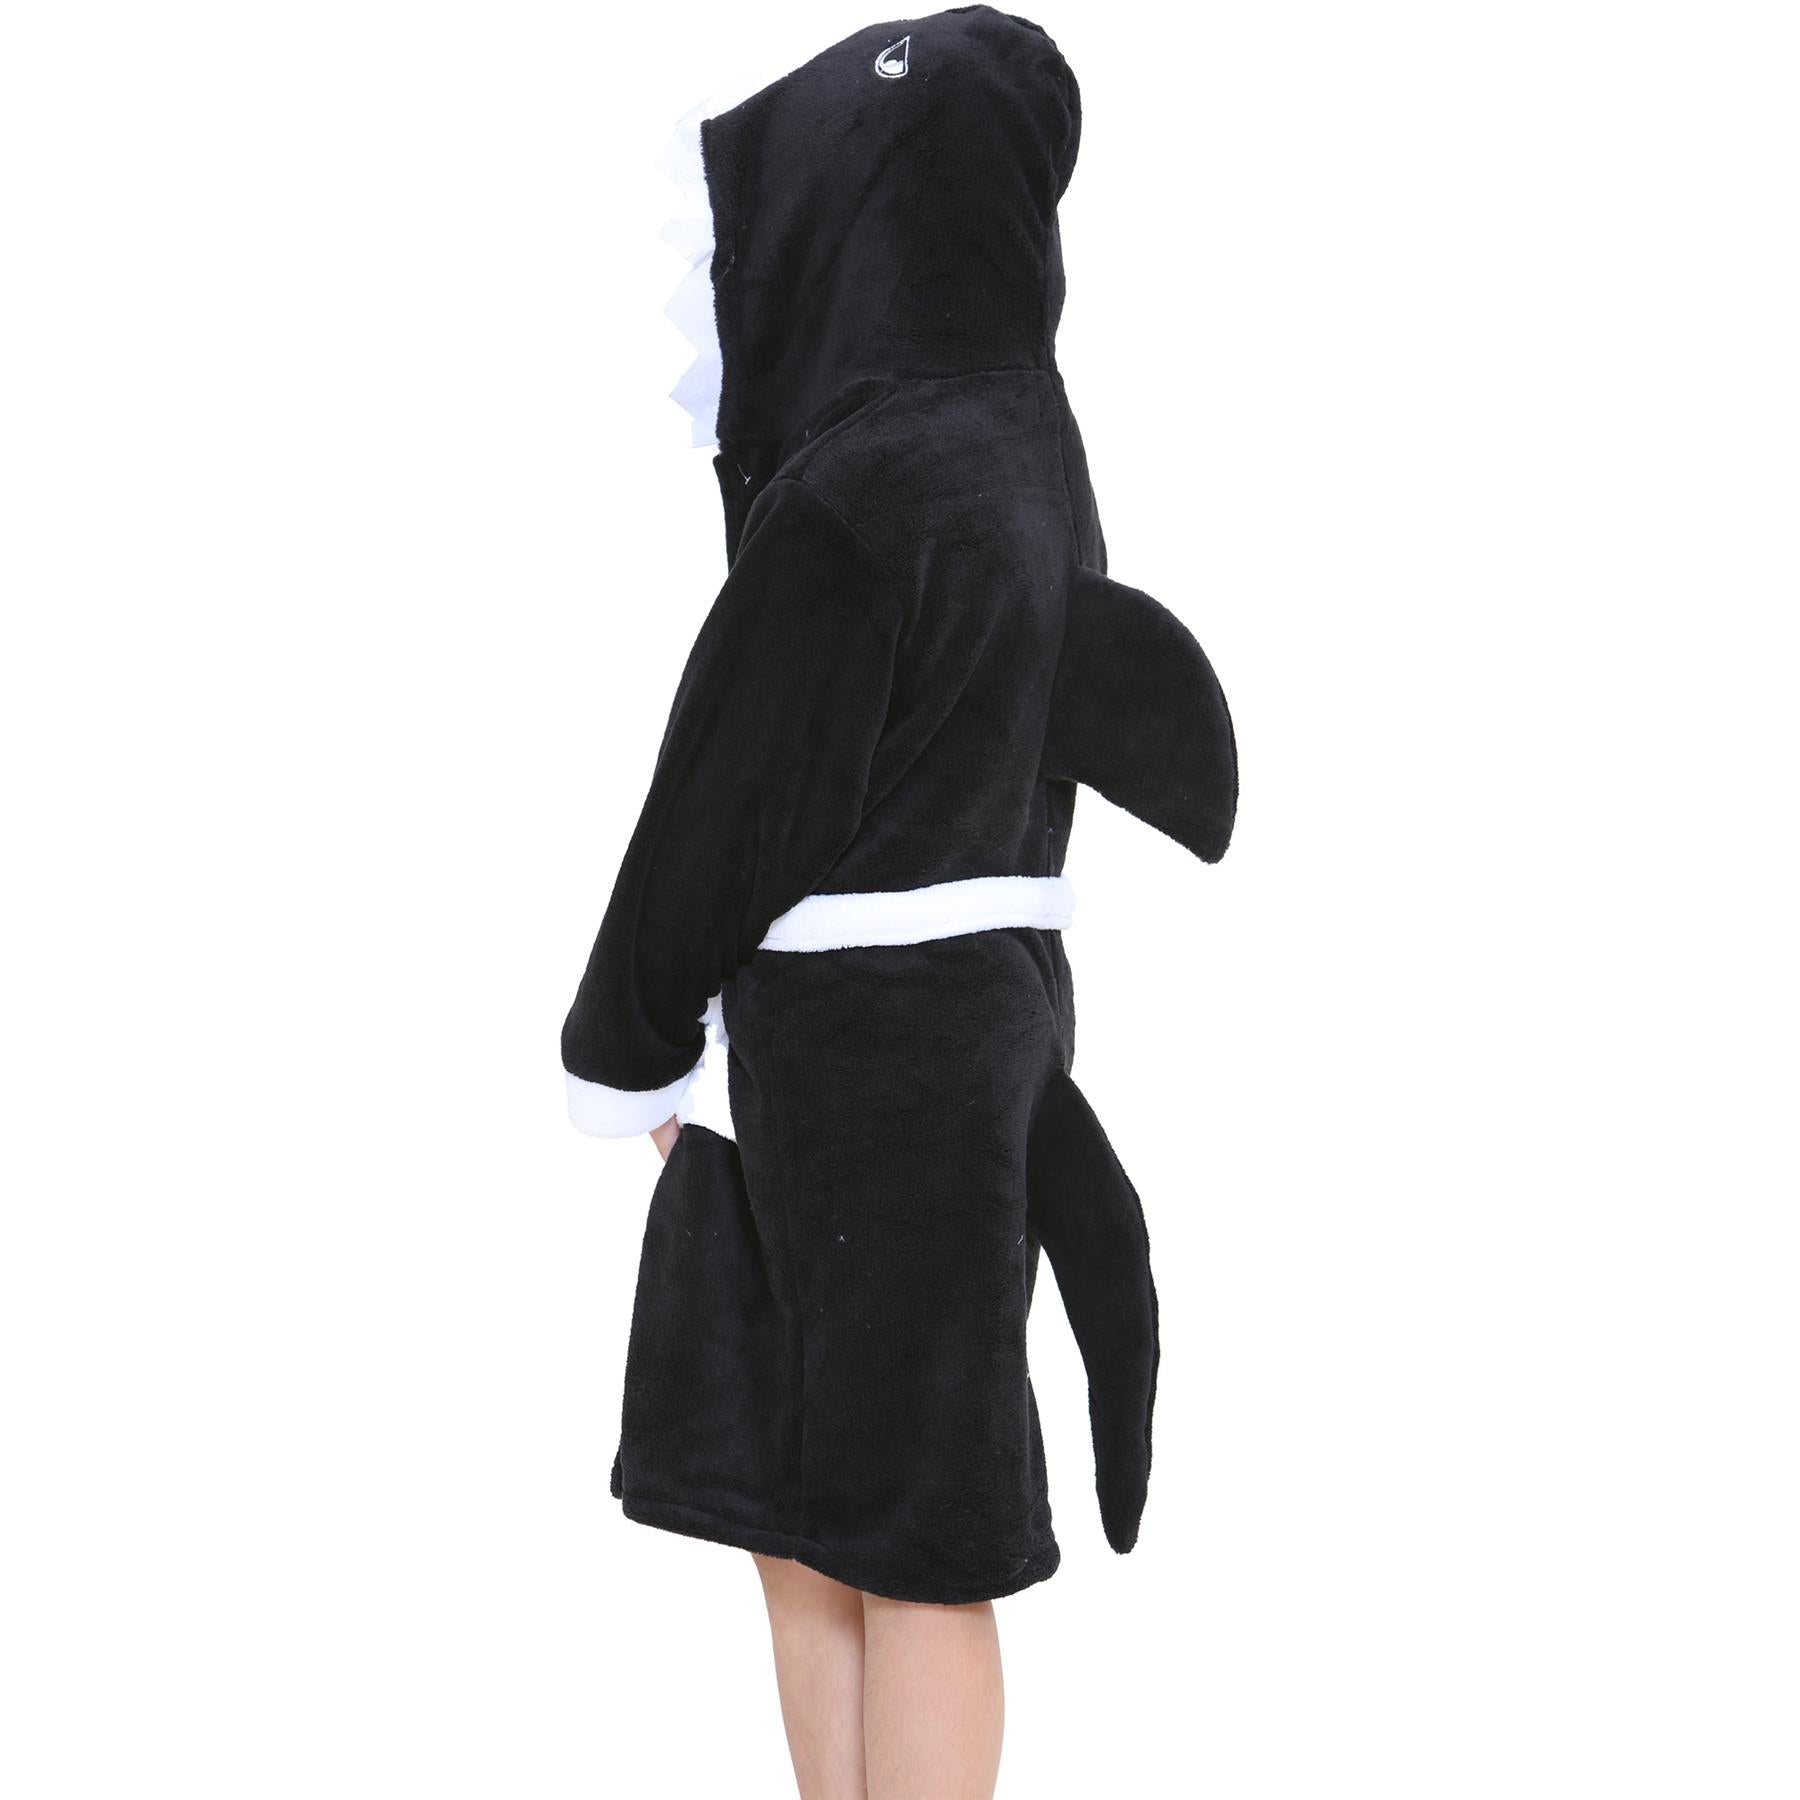 Kids Girls Boys Super Soft 3D Shark Animal Hooded Bathrobe